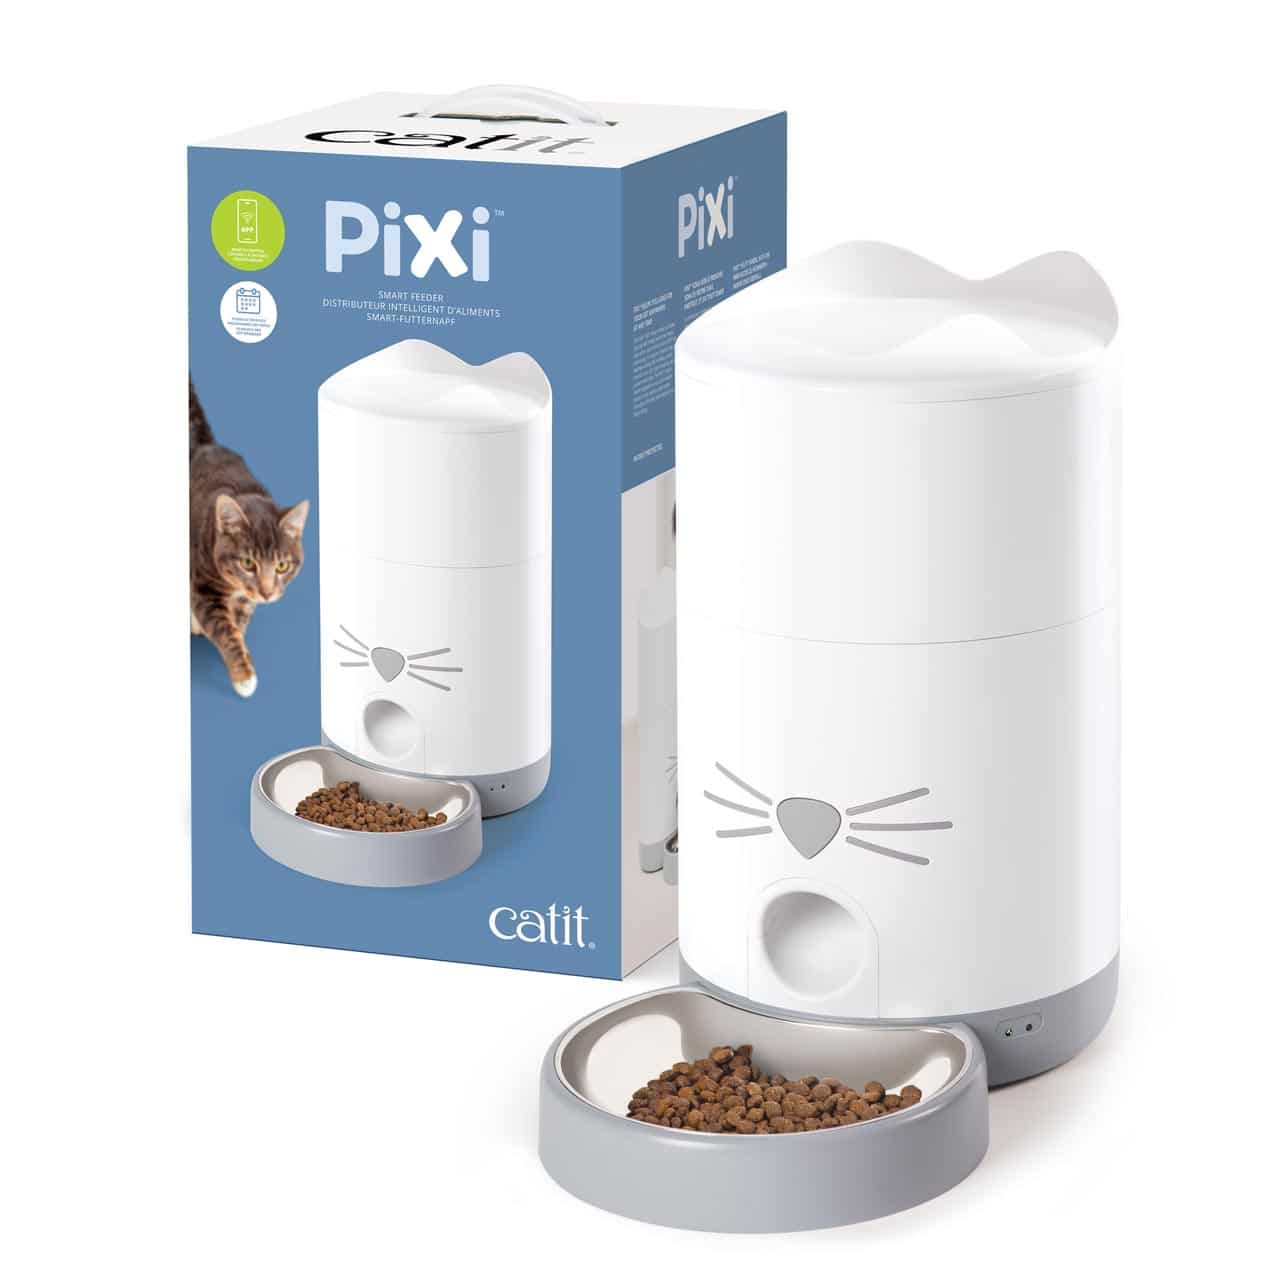 PIXI Smart voerautomaat en verpakking